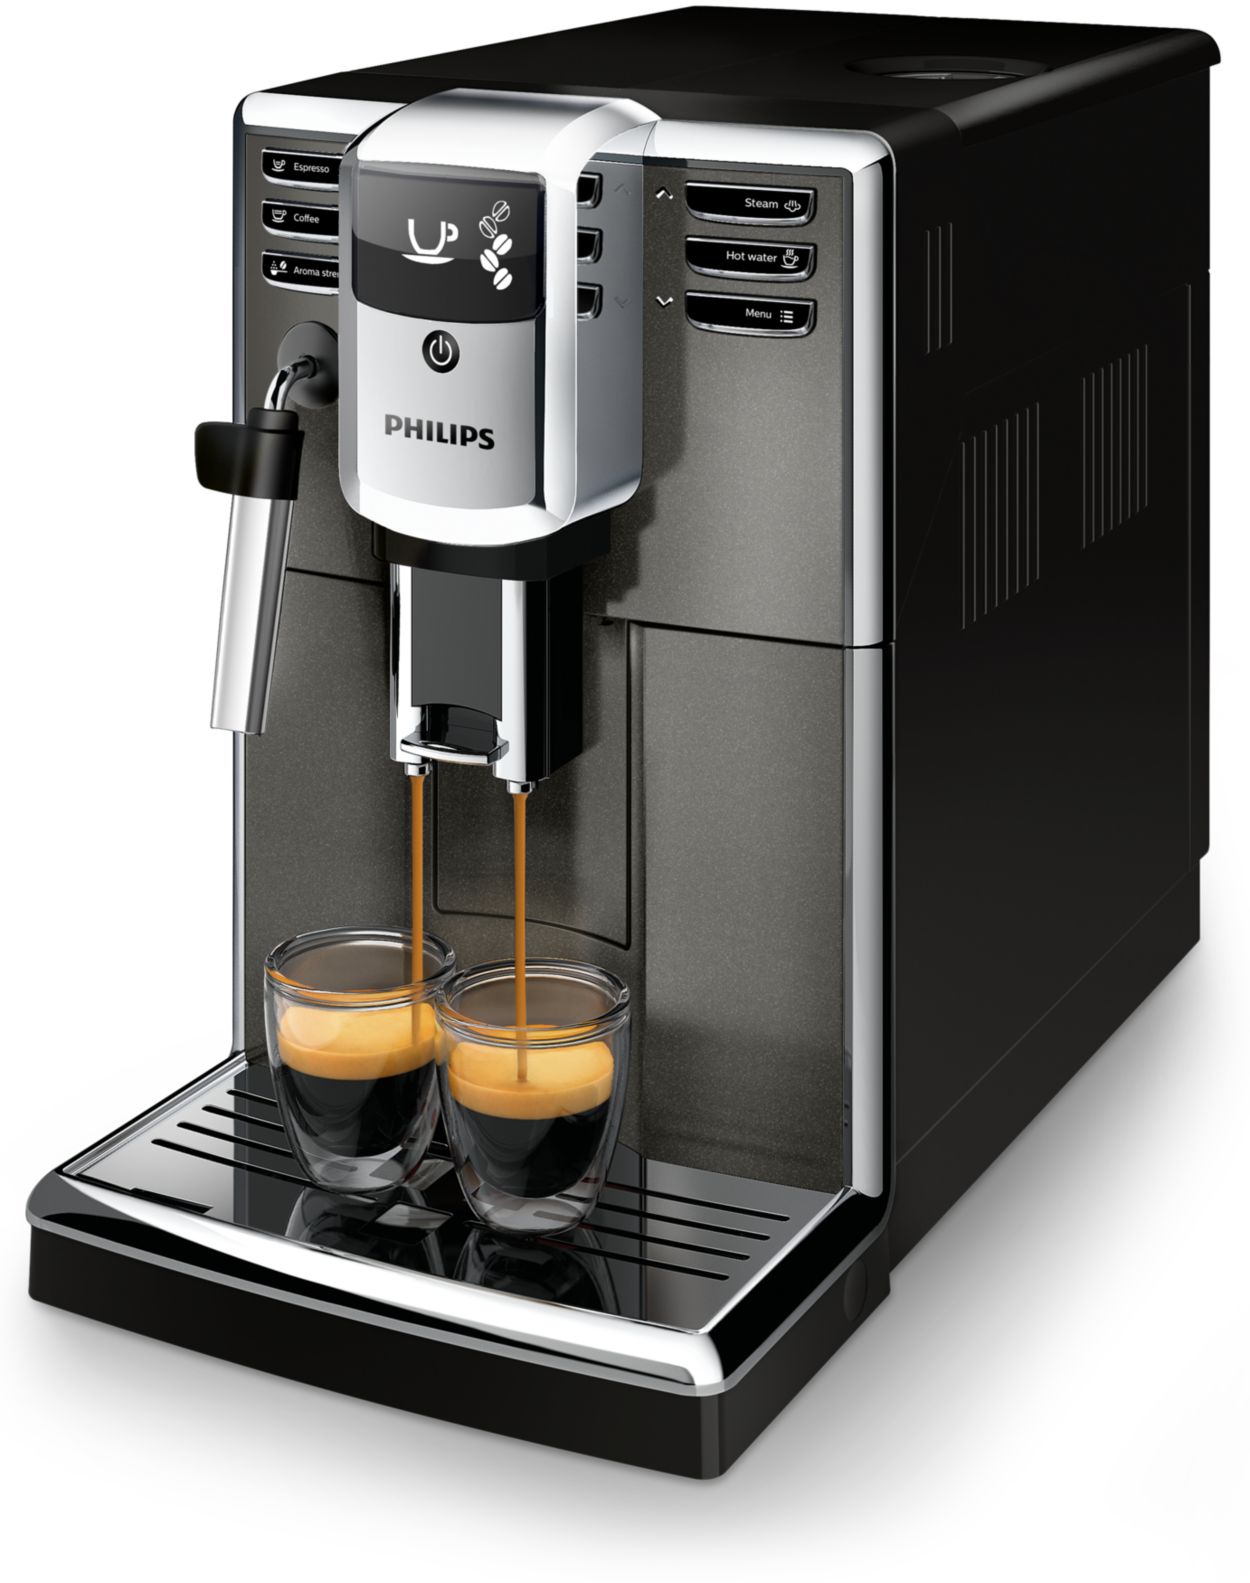 Double réduction sur cette excellente machine à café à grains automatique  Philips